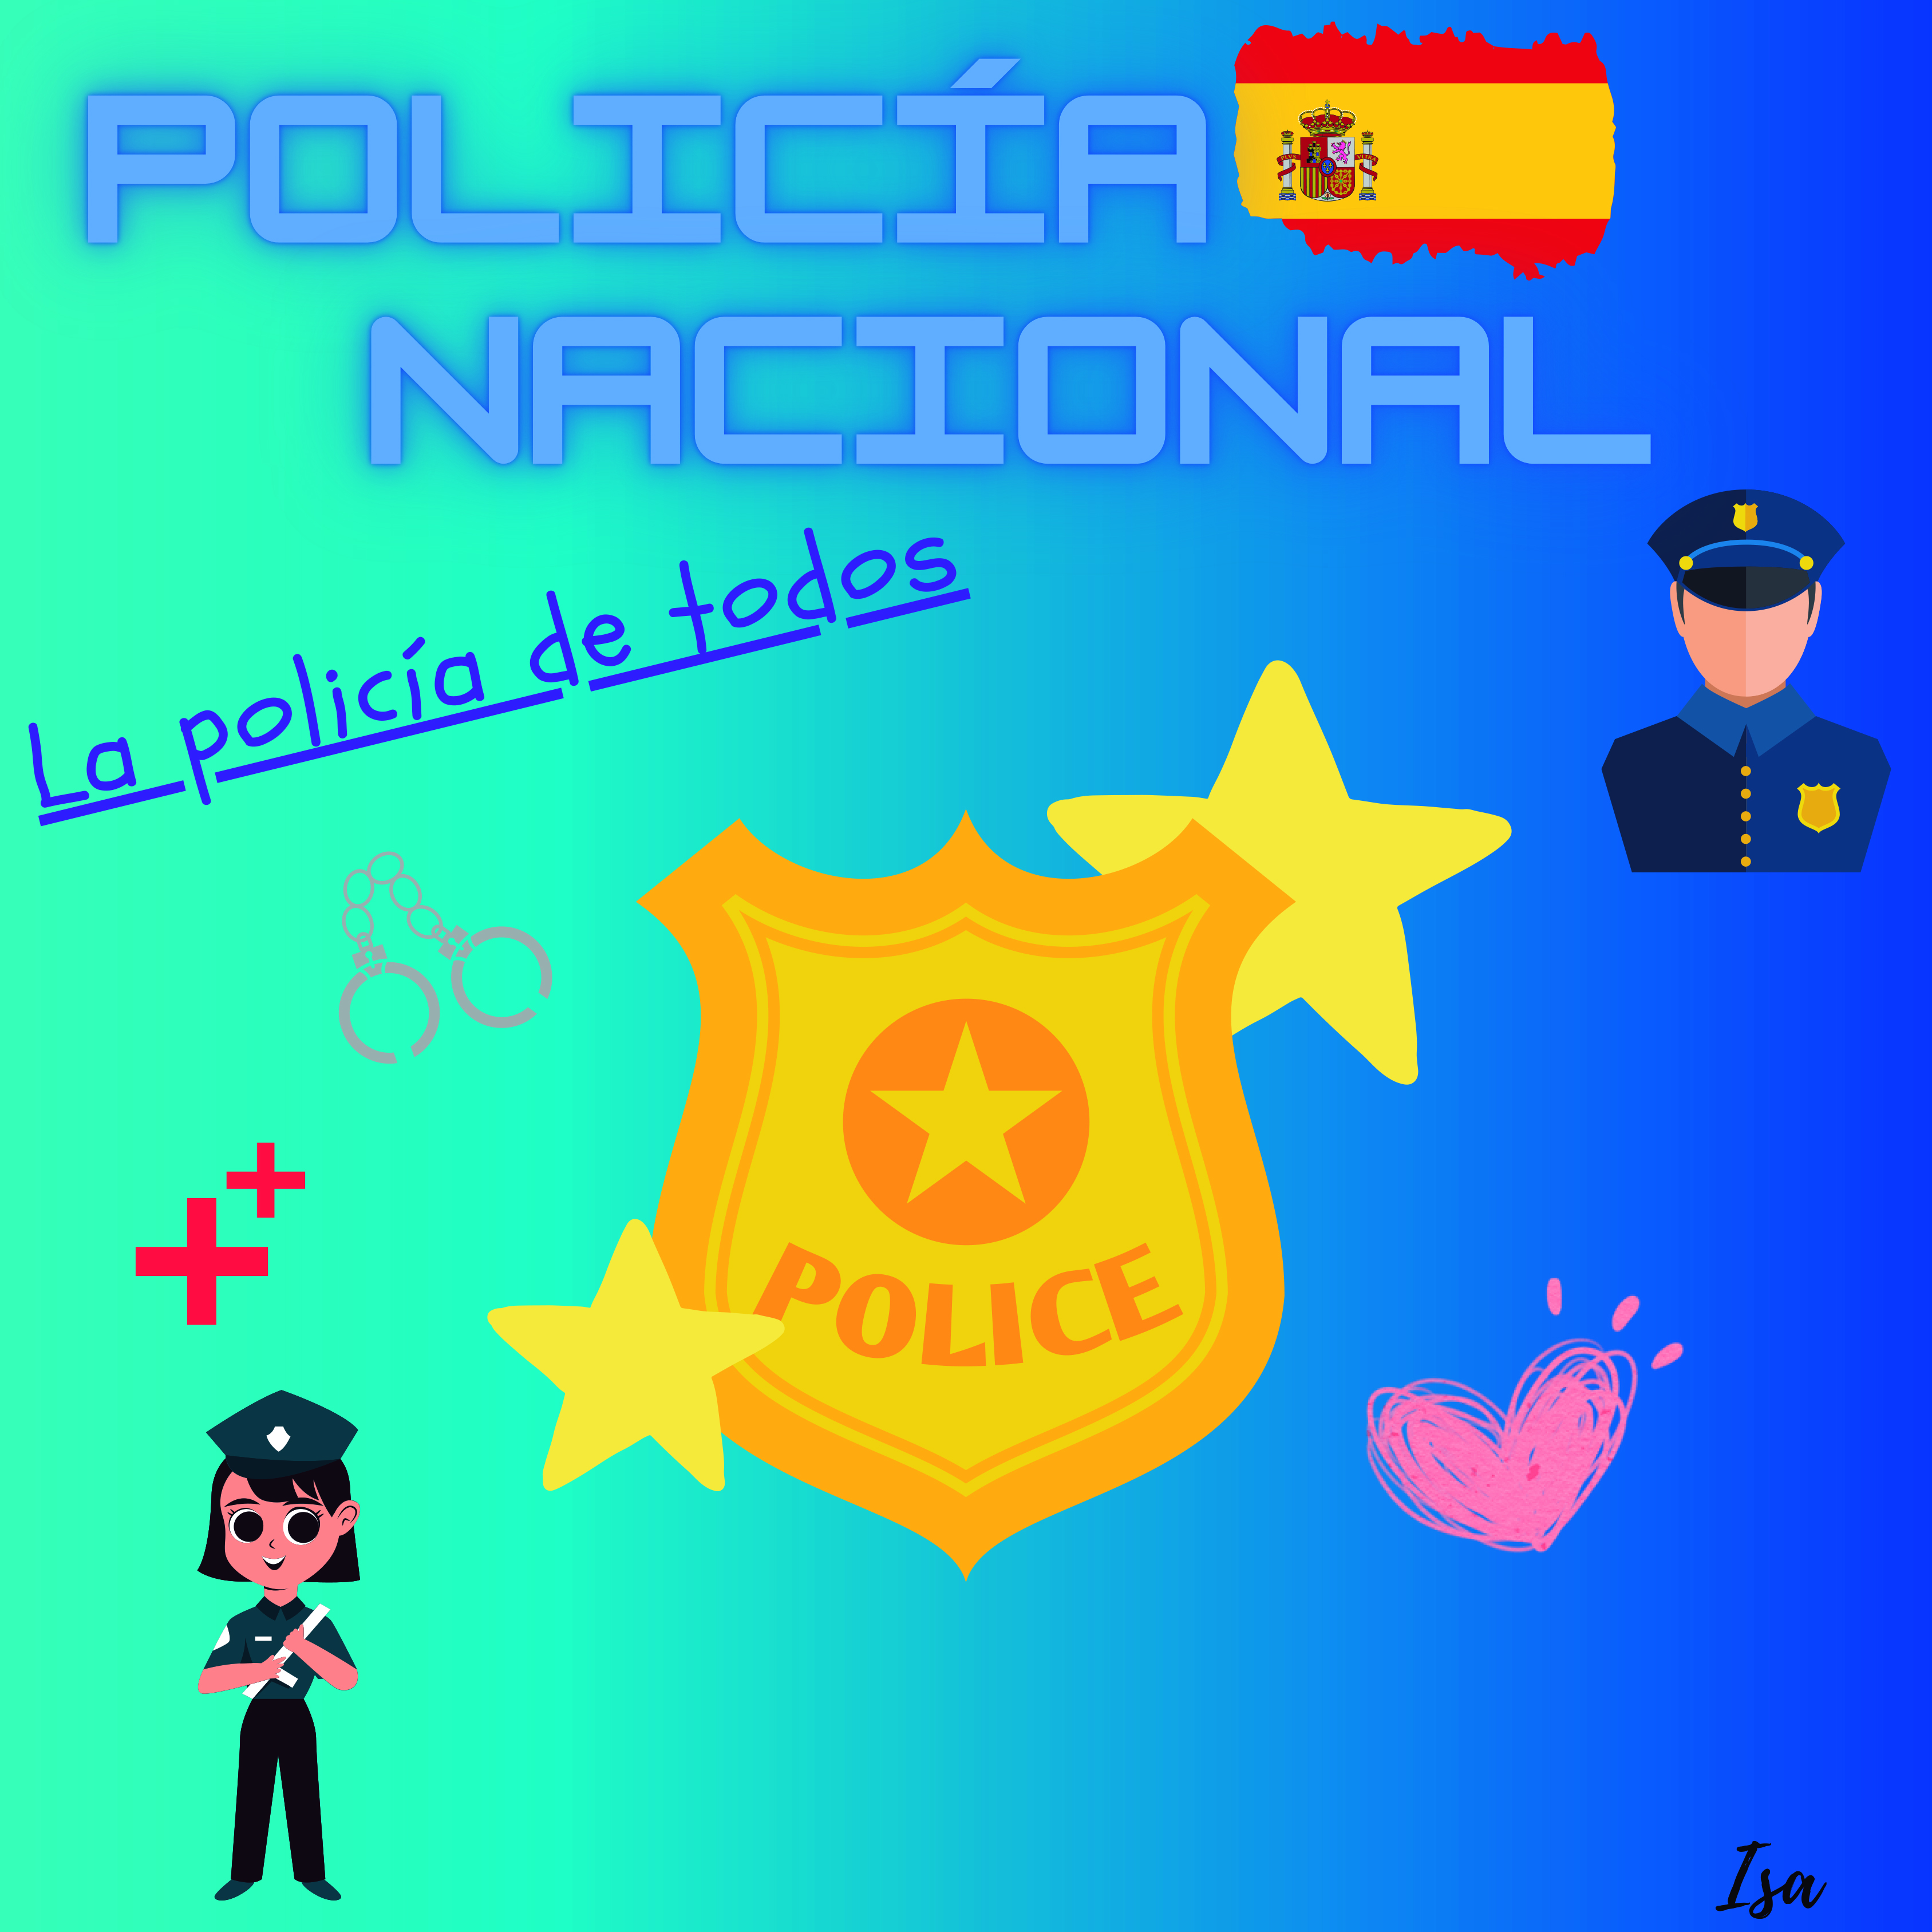 Composición de imágenes de Policía, donde se puede ver la bandera de España junto con la leyenda POLICÍA NACIONAL, y el eslogan 